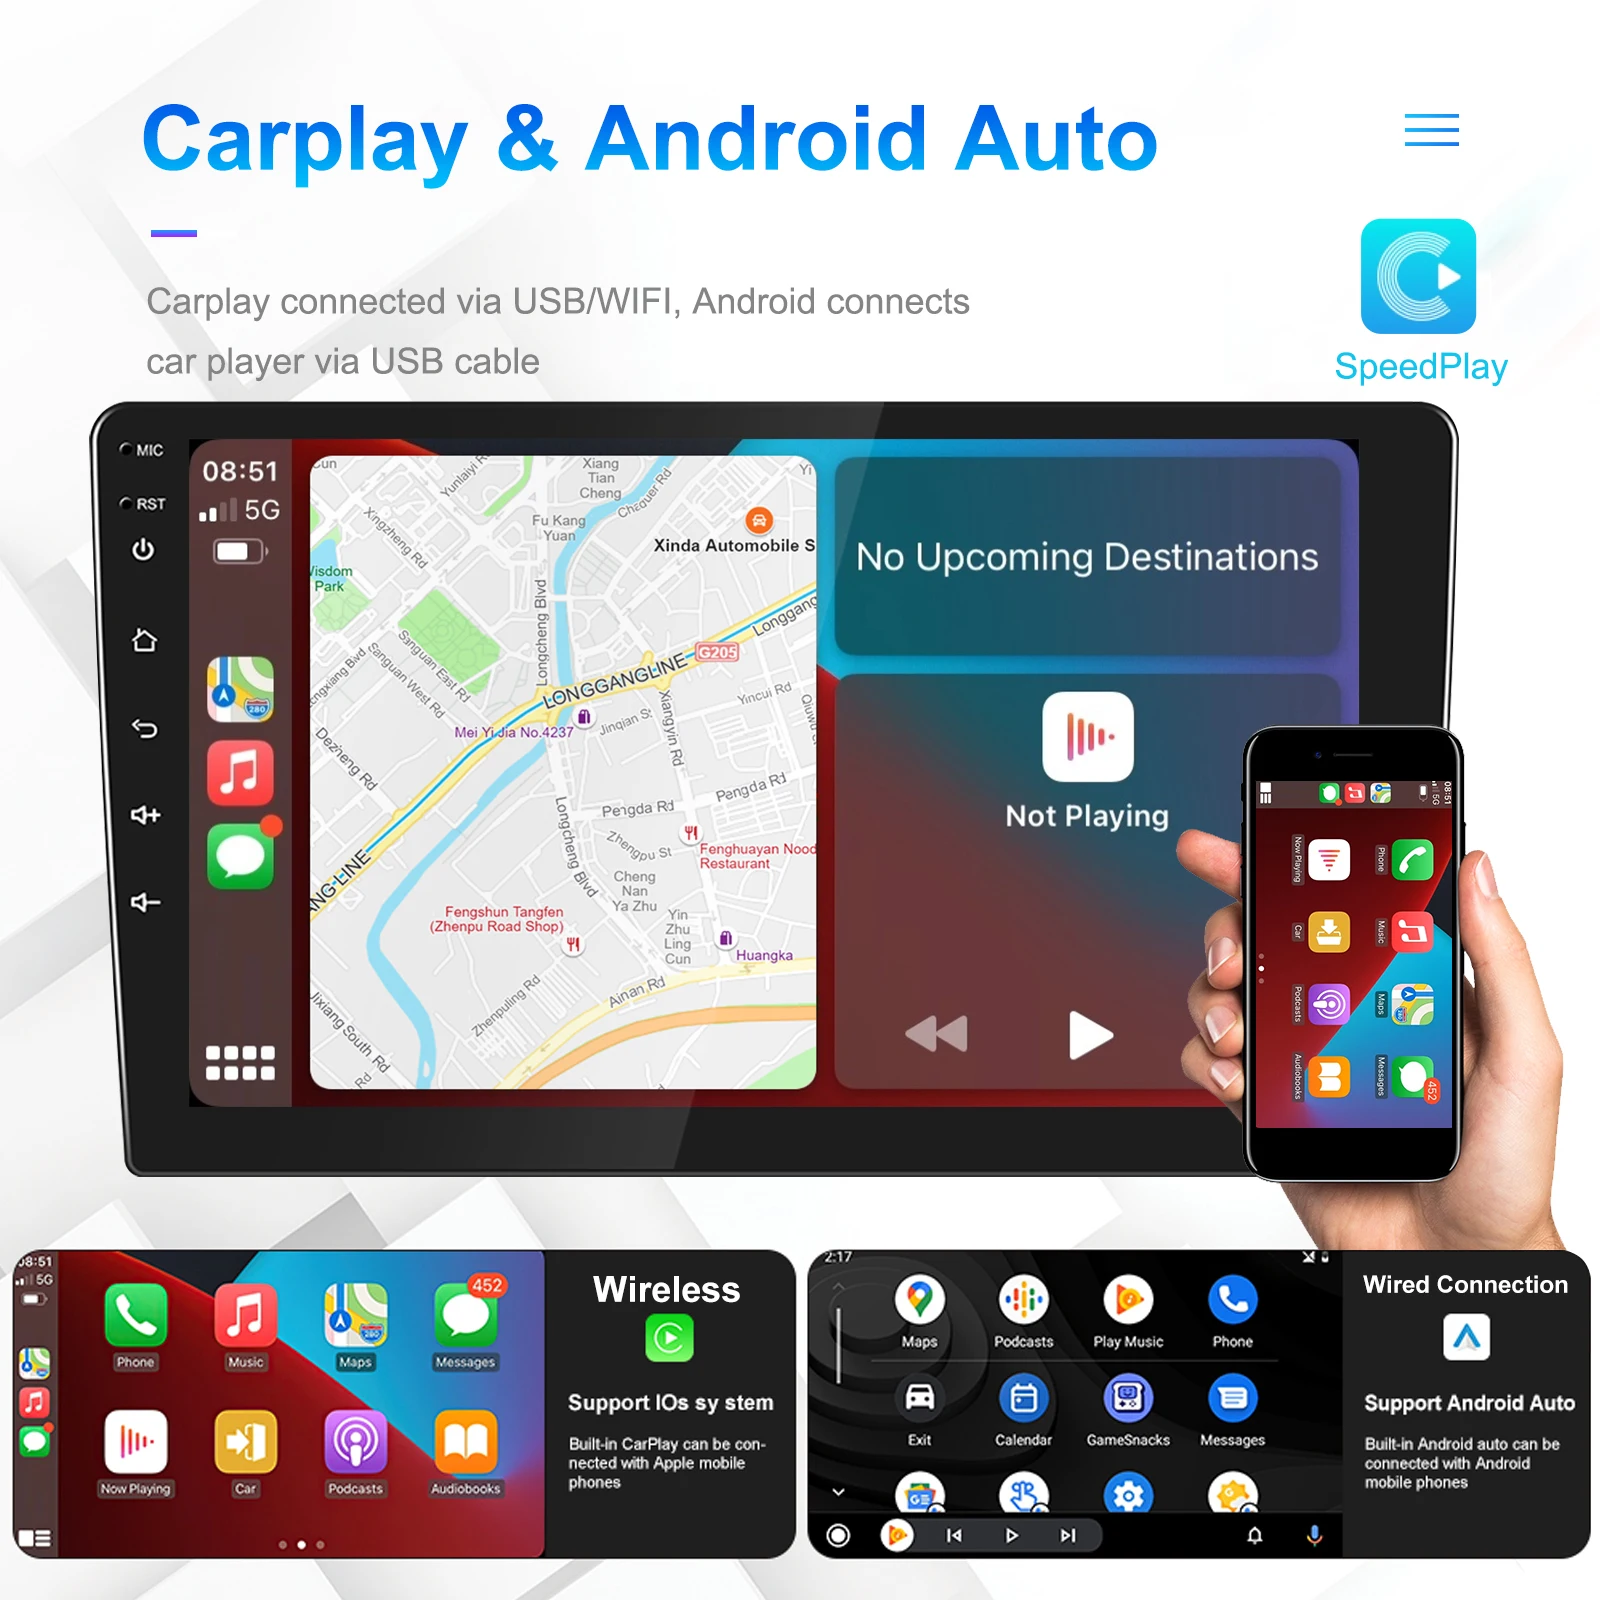 AMPrime 2 Din Android 11 autórádió Multimédia Lejátszó 7